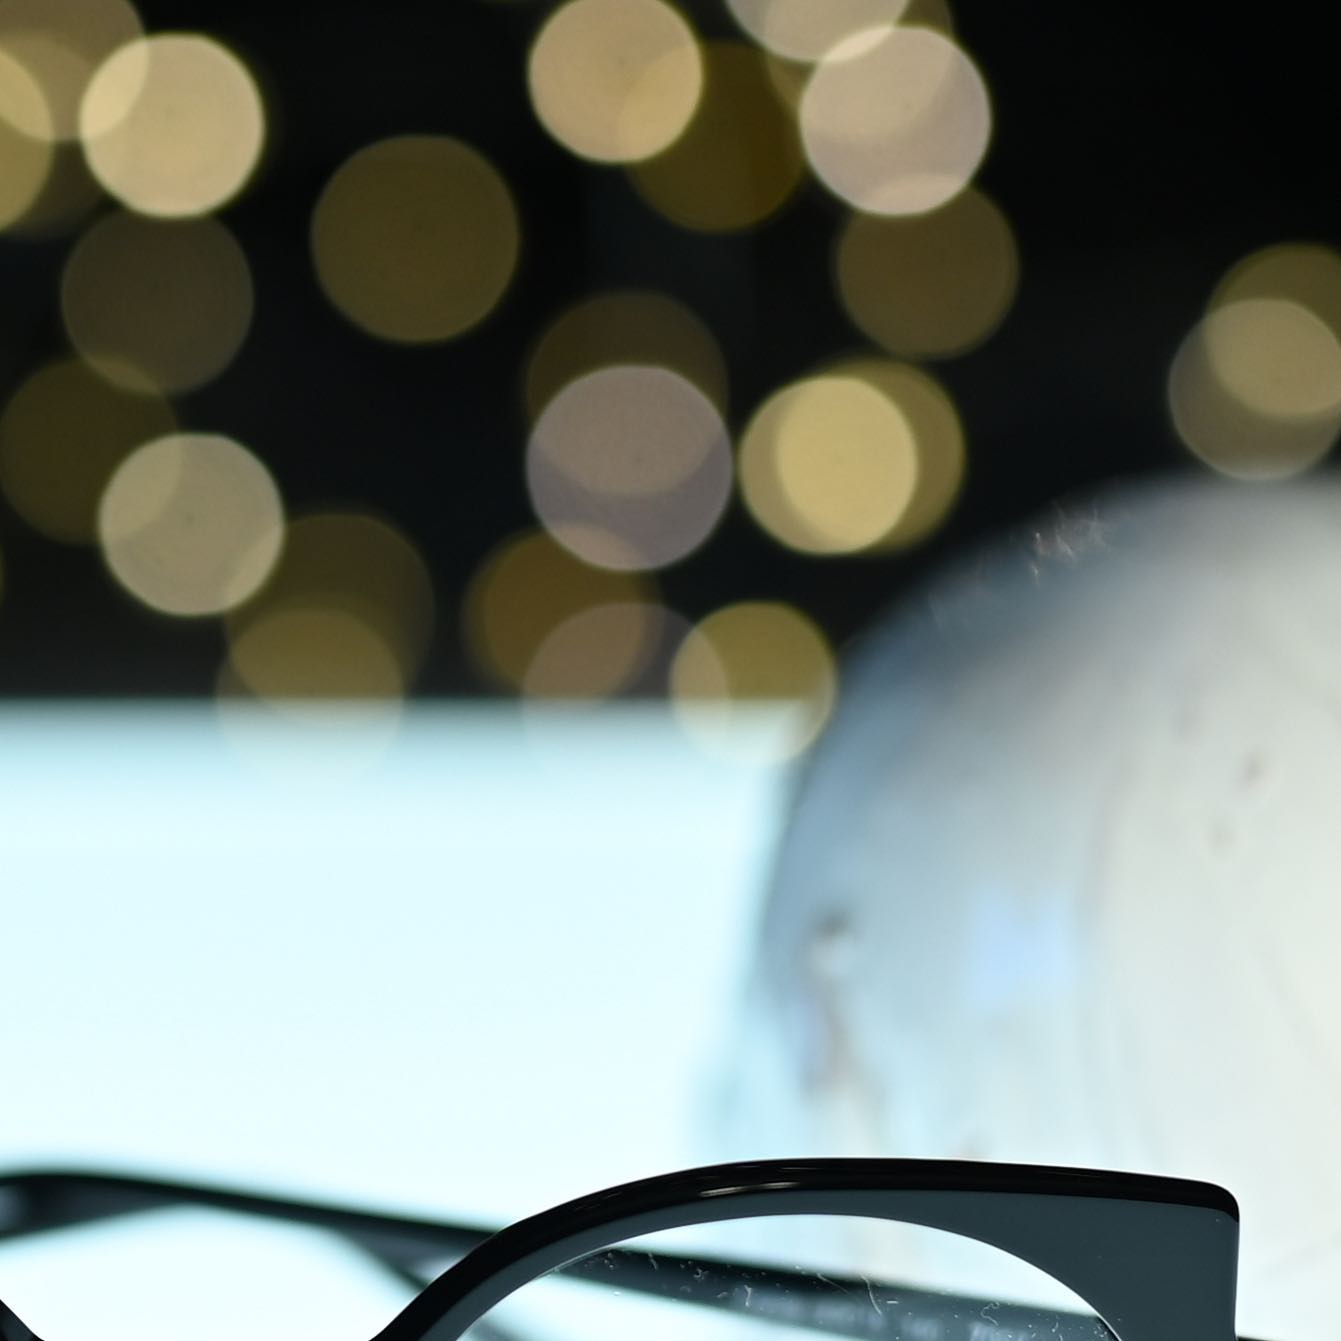 Buon anno e un sereno 2022 da Ottica Mantovani Venezia.

👓 Ottica Mantovani Venezia dal 1871, occhiali d’autore per donna e uomo.

ℹ️ Visita il nostro sito per vedere tutta la nostra produzione www.otticamantovani.it

📞 Chiamaci per informazioni +39 0415223427

#sunglasses #otticamantovani #otticamantovanivenezia #lunettes #brillen #brillenstyling #ottica #designedinvenice #glasses #madeinitaly  #eyeglasses #eyewear  #eyewearfashion #optical #eyes #vision #occhiali #optometry  #stylish #design #occhialidavista #uniqueeyewear #eye #opticalshop #ophthalmology #happynewyear #buonanno 

Orso by @lacocciaia_ceramica